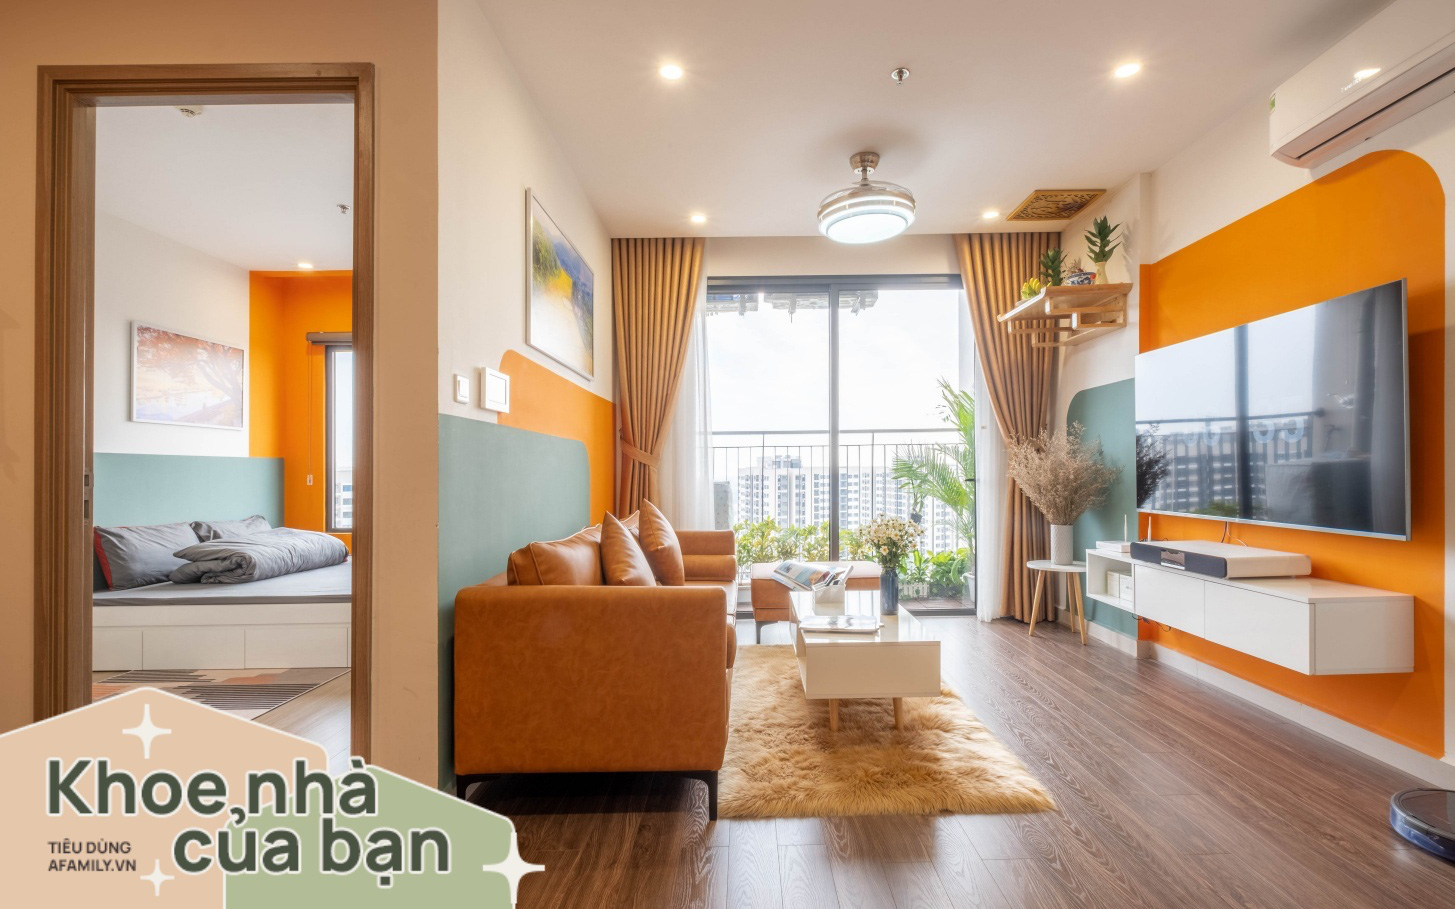 Ngắm căn hộ 43m² đẹp chanh sả như bên trời Tây với chi phí nội thất 68 triệu đồng ở Vinhomes Ocean Park, Hà Nội